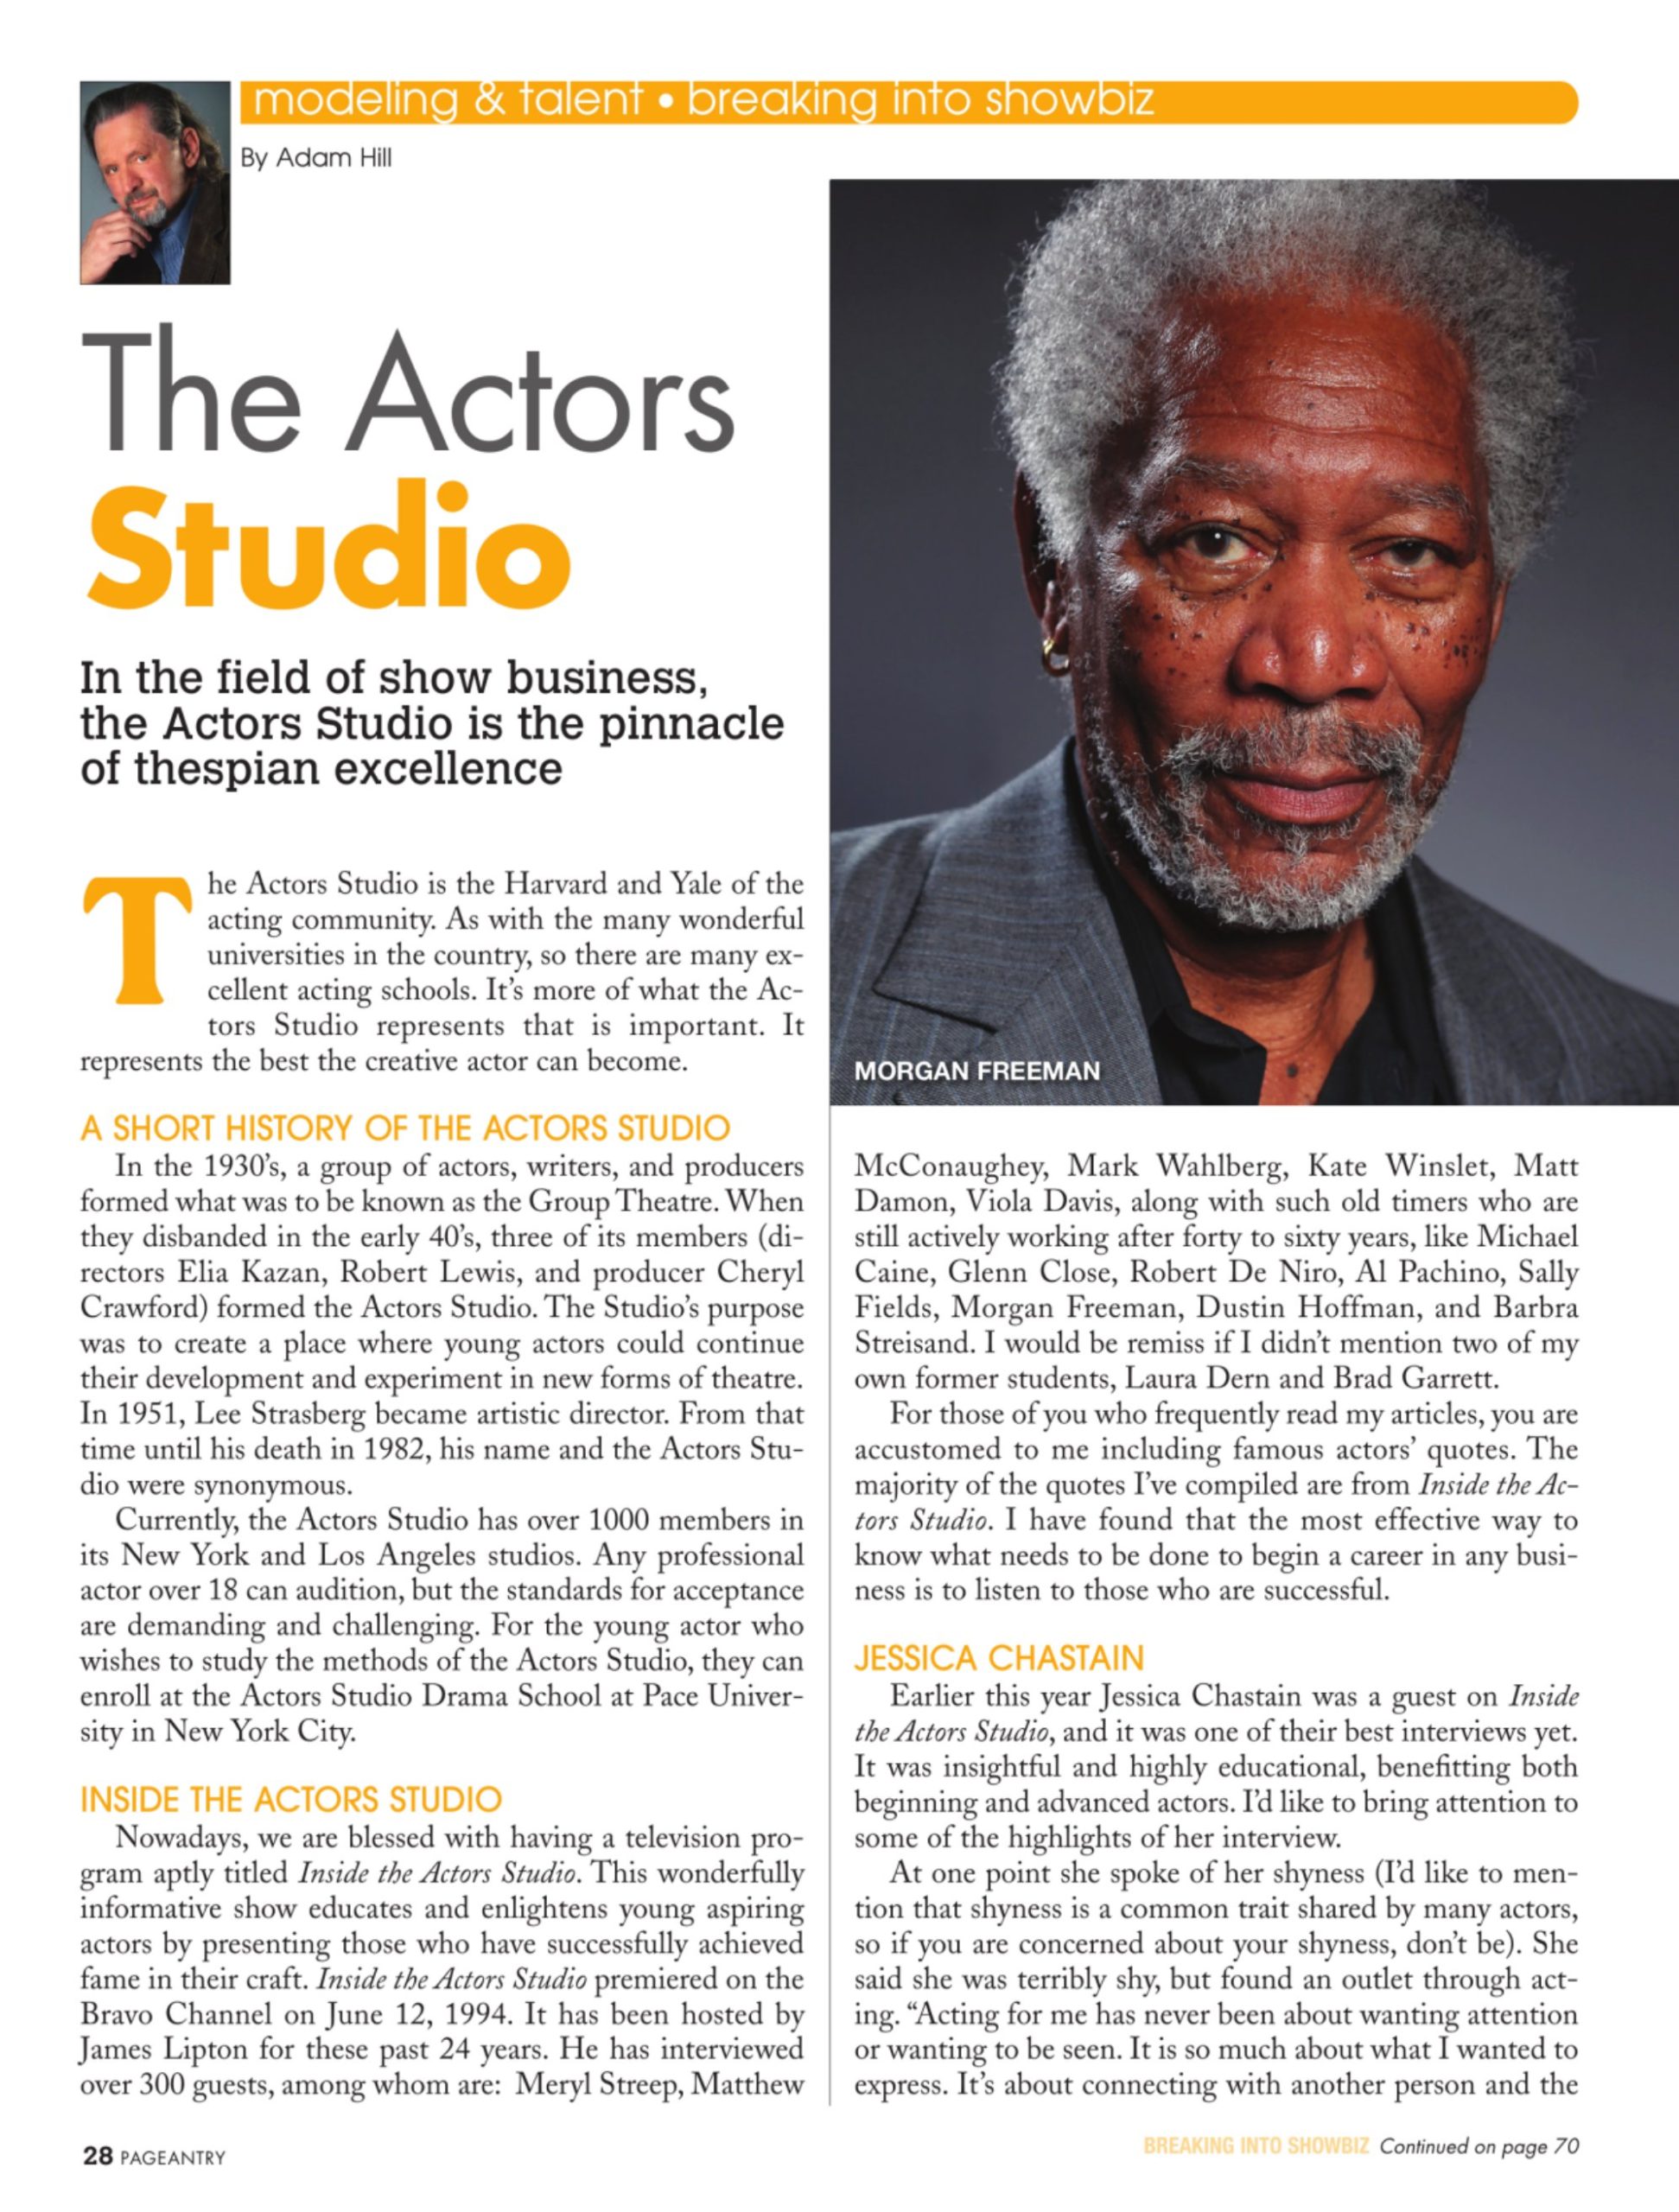 The Actors Studio - Pageantry Magazine